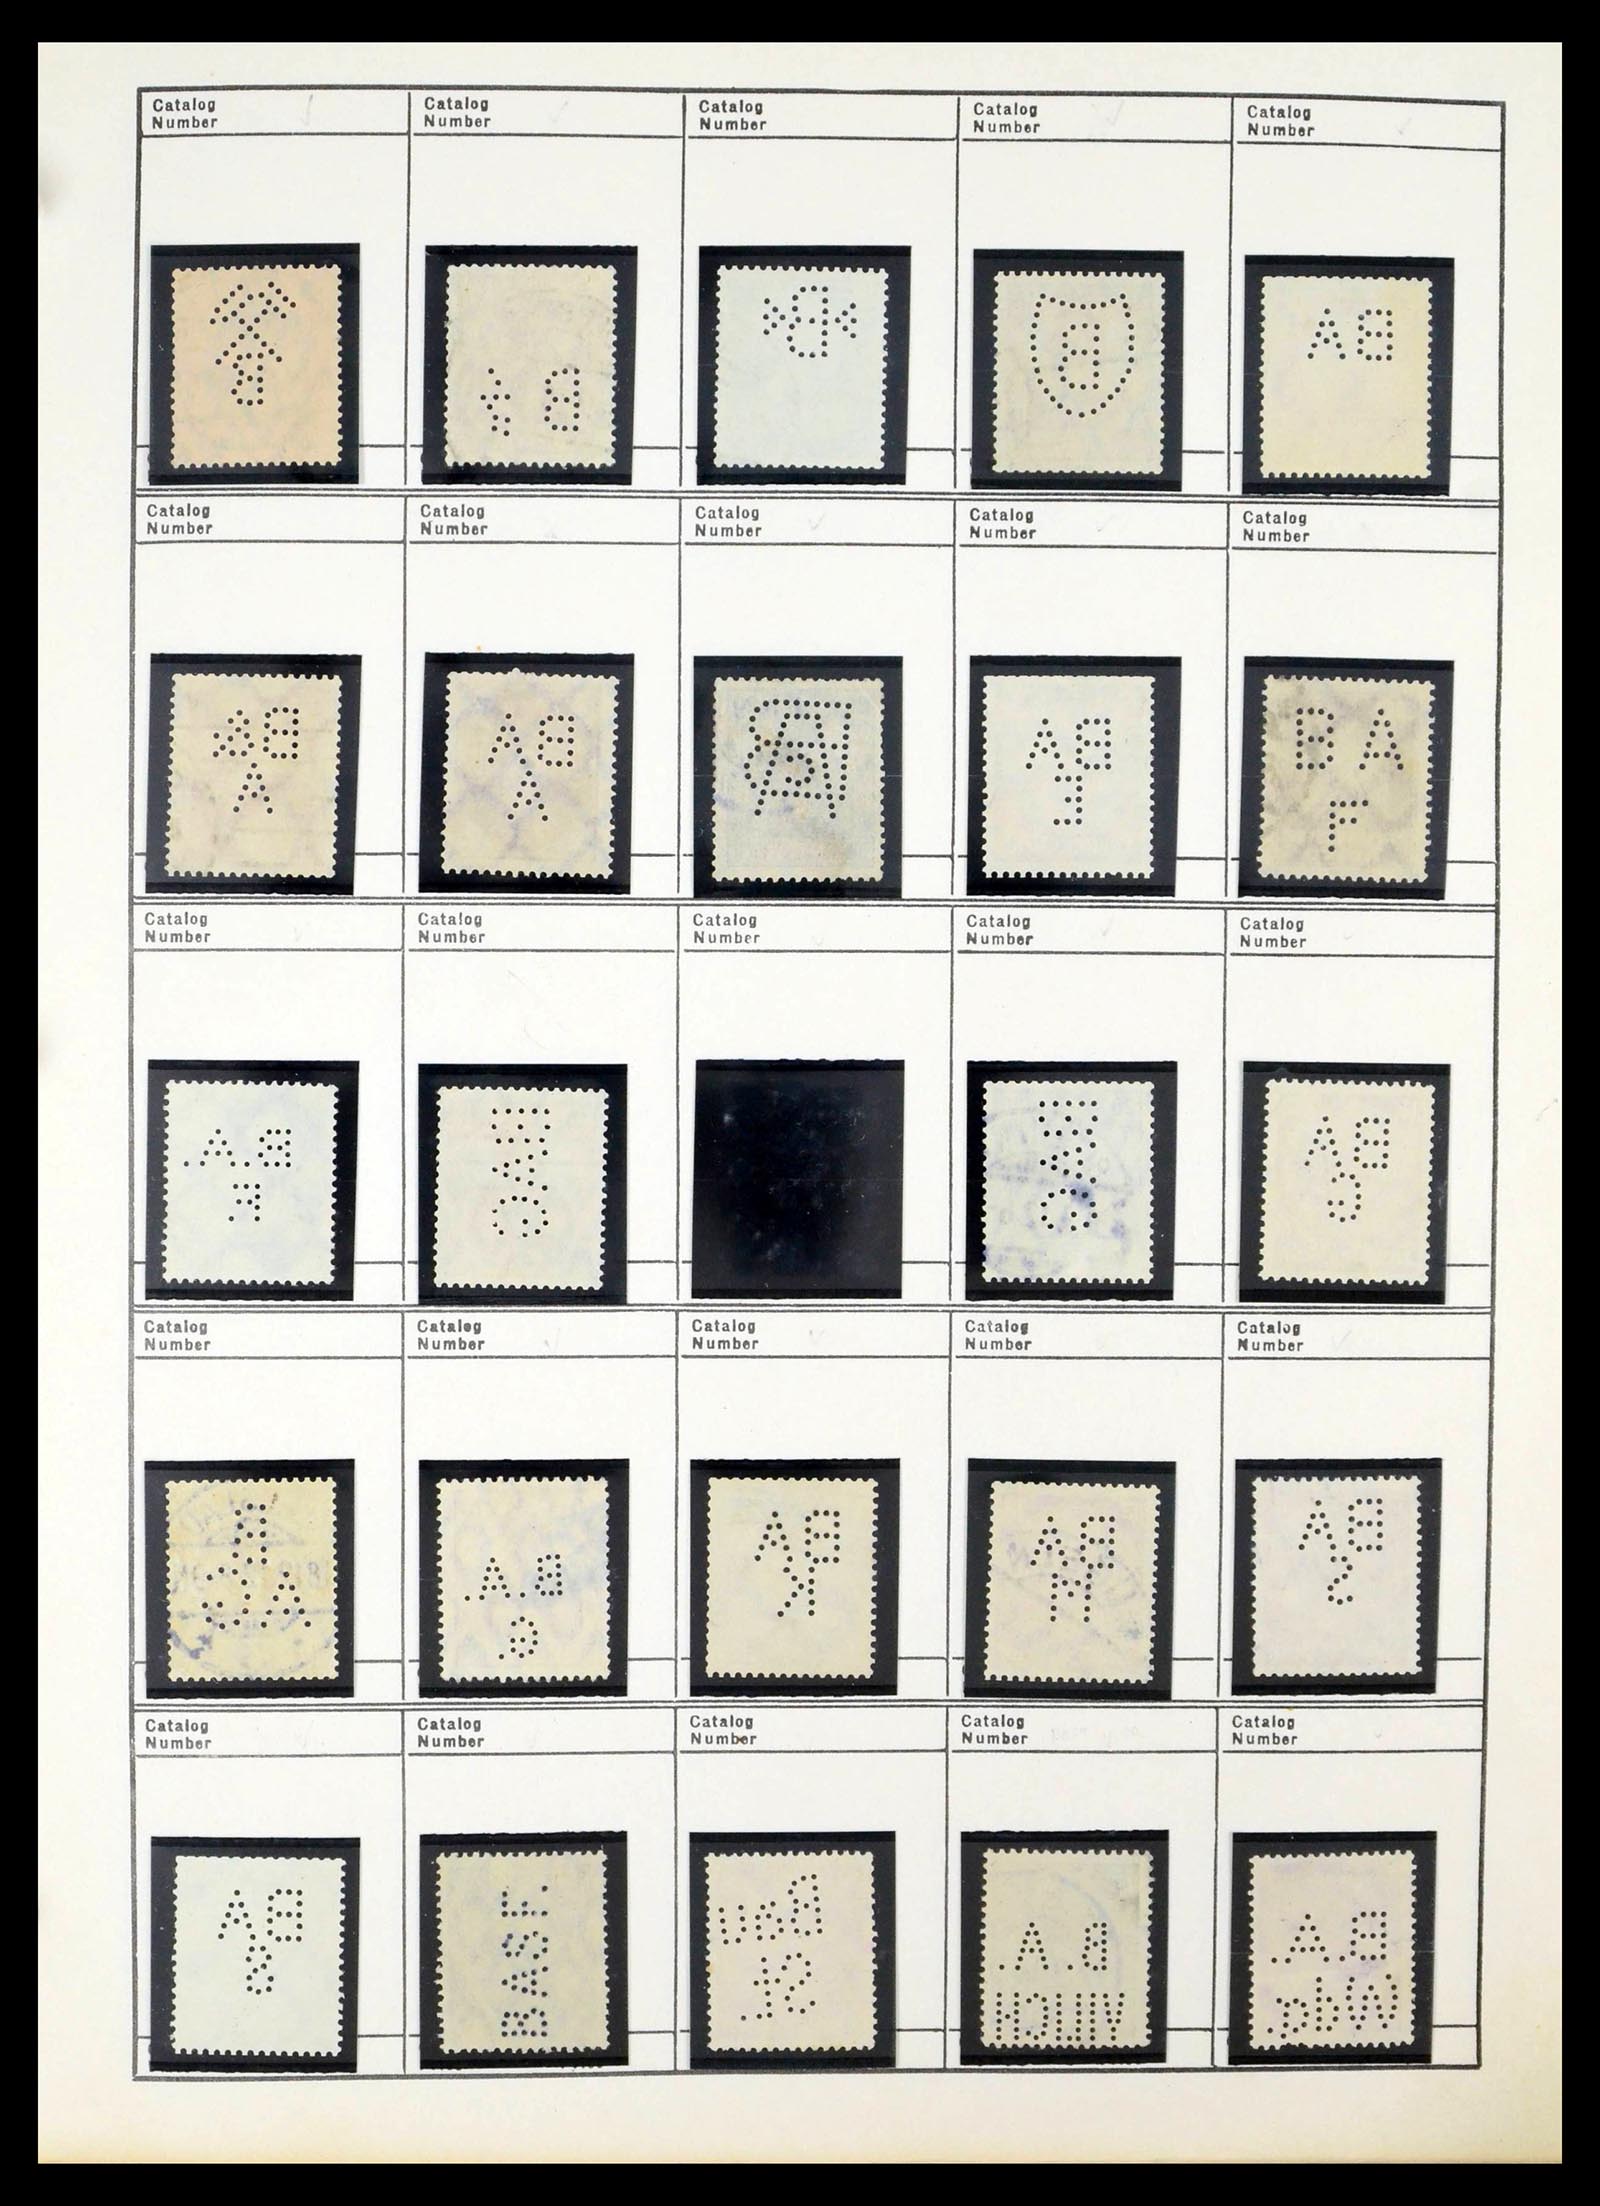 39480 0053 - Stamp collection 39480 German Reich perfins 1880-1955.